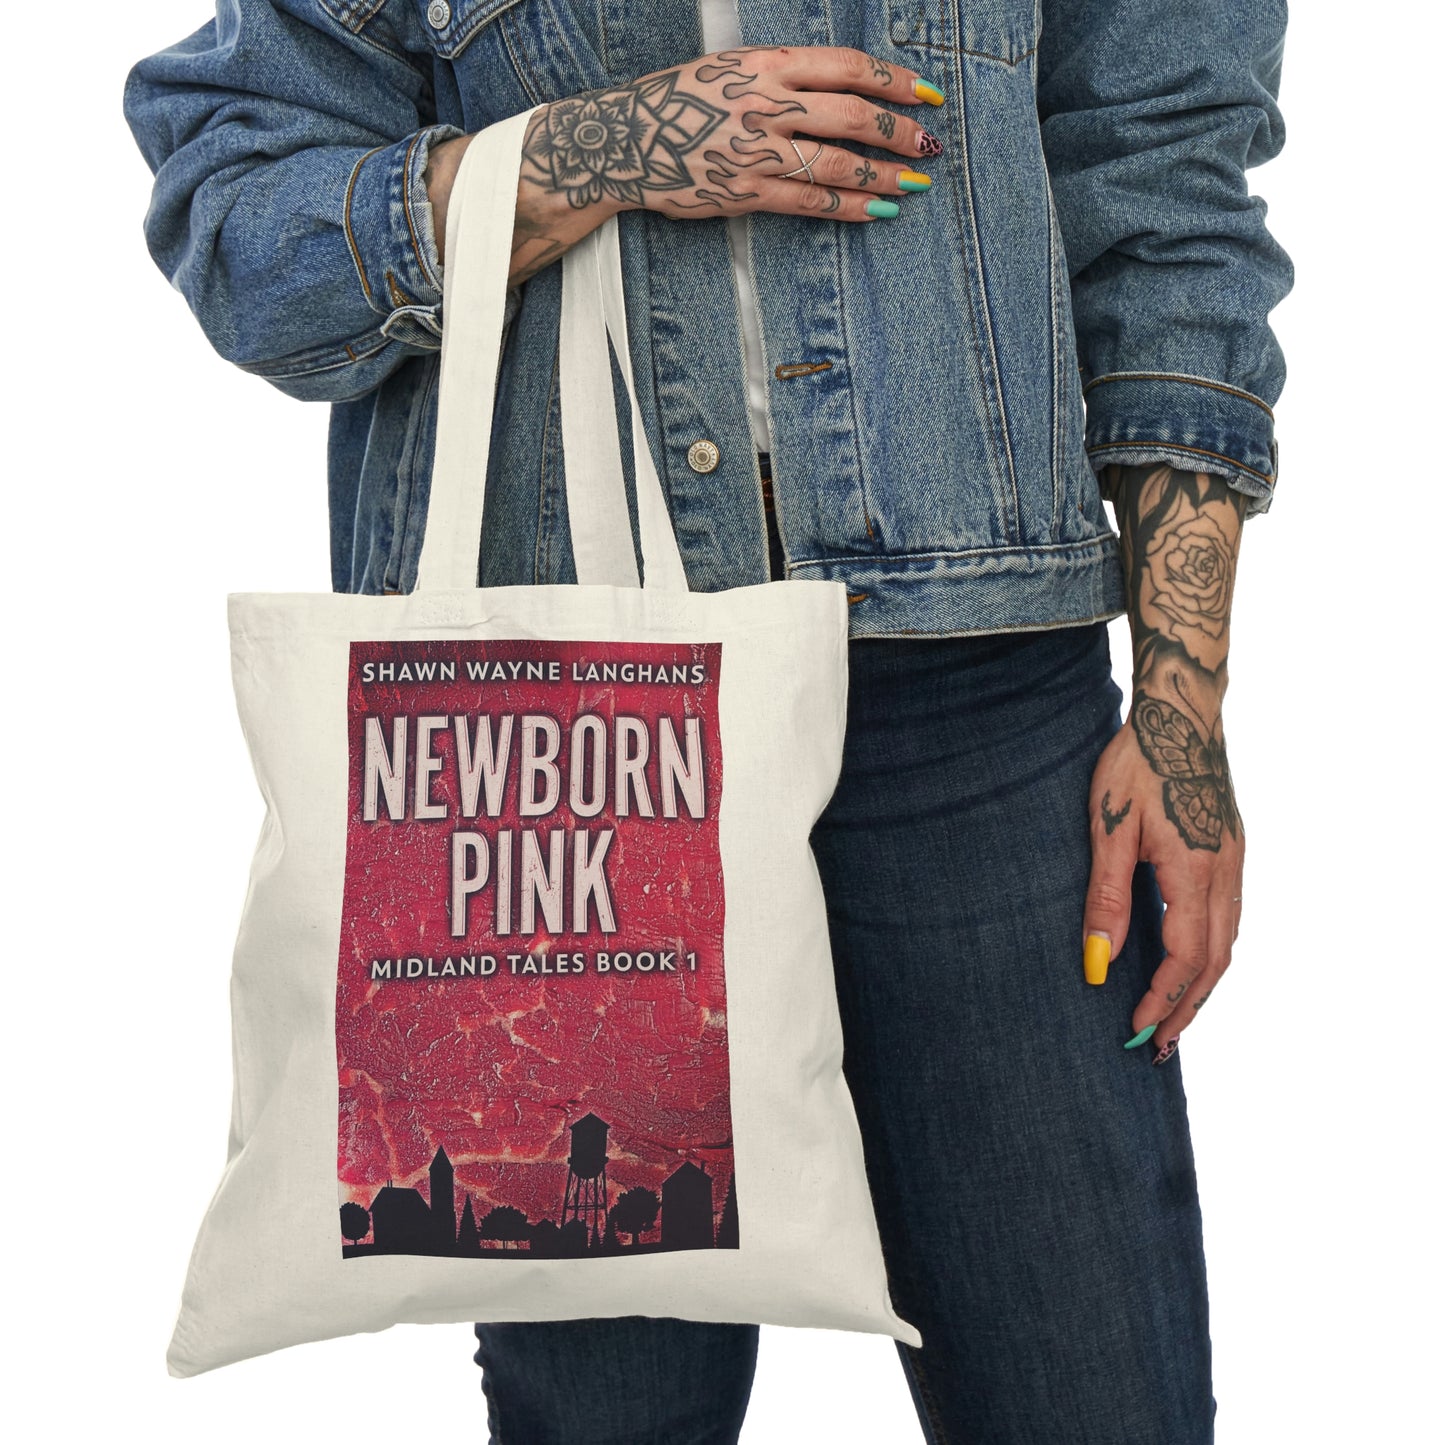 Newborn Pink - Natural Tote Bag